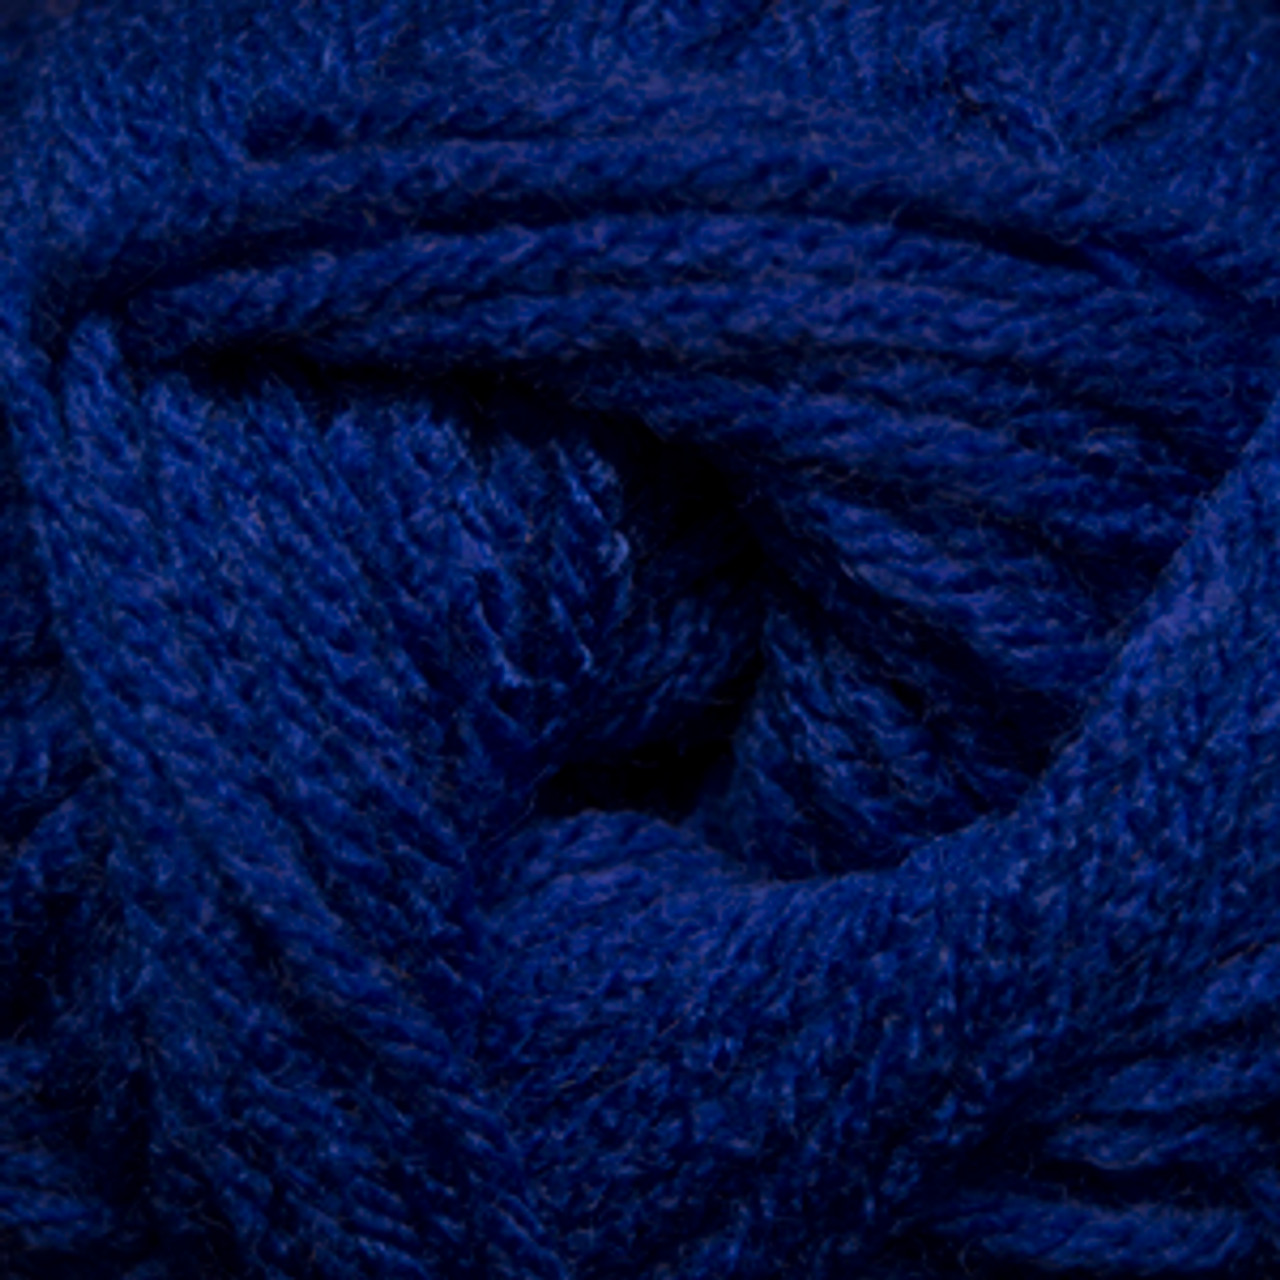 Cobalt Blue hand dyed yarn - Destination Yarn